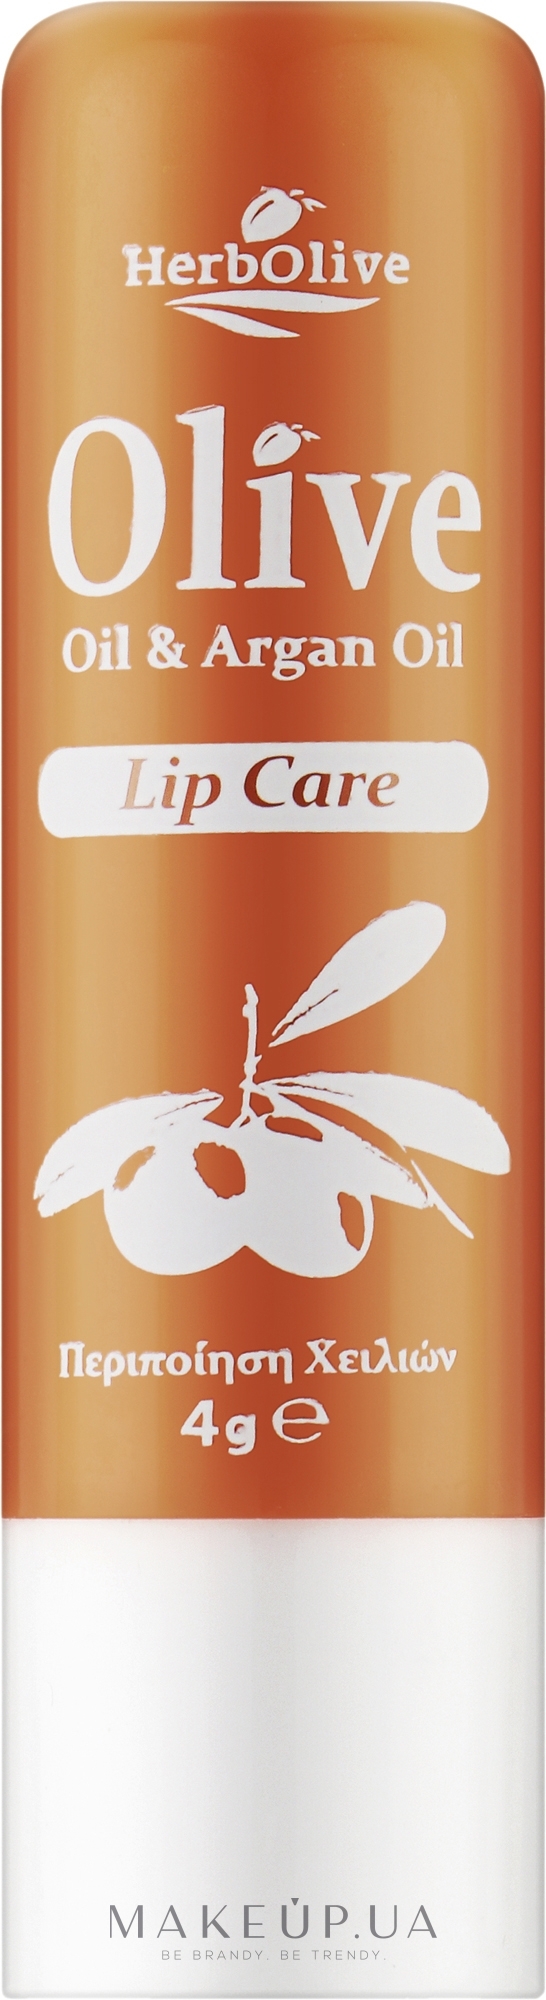 Бальзам для губ с аргановым маслом - Madis HerbOlive Lip Care — фото 4.5g